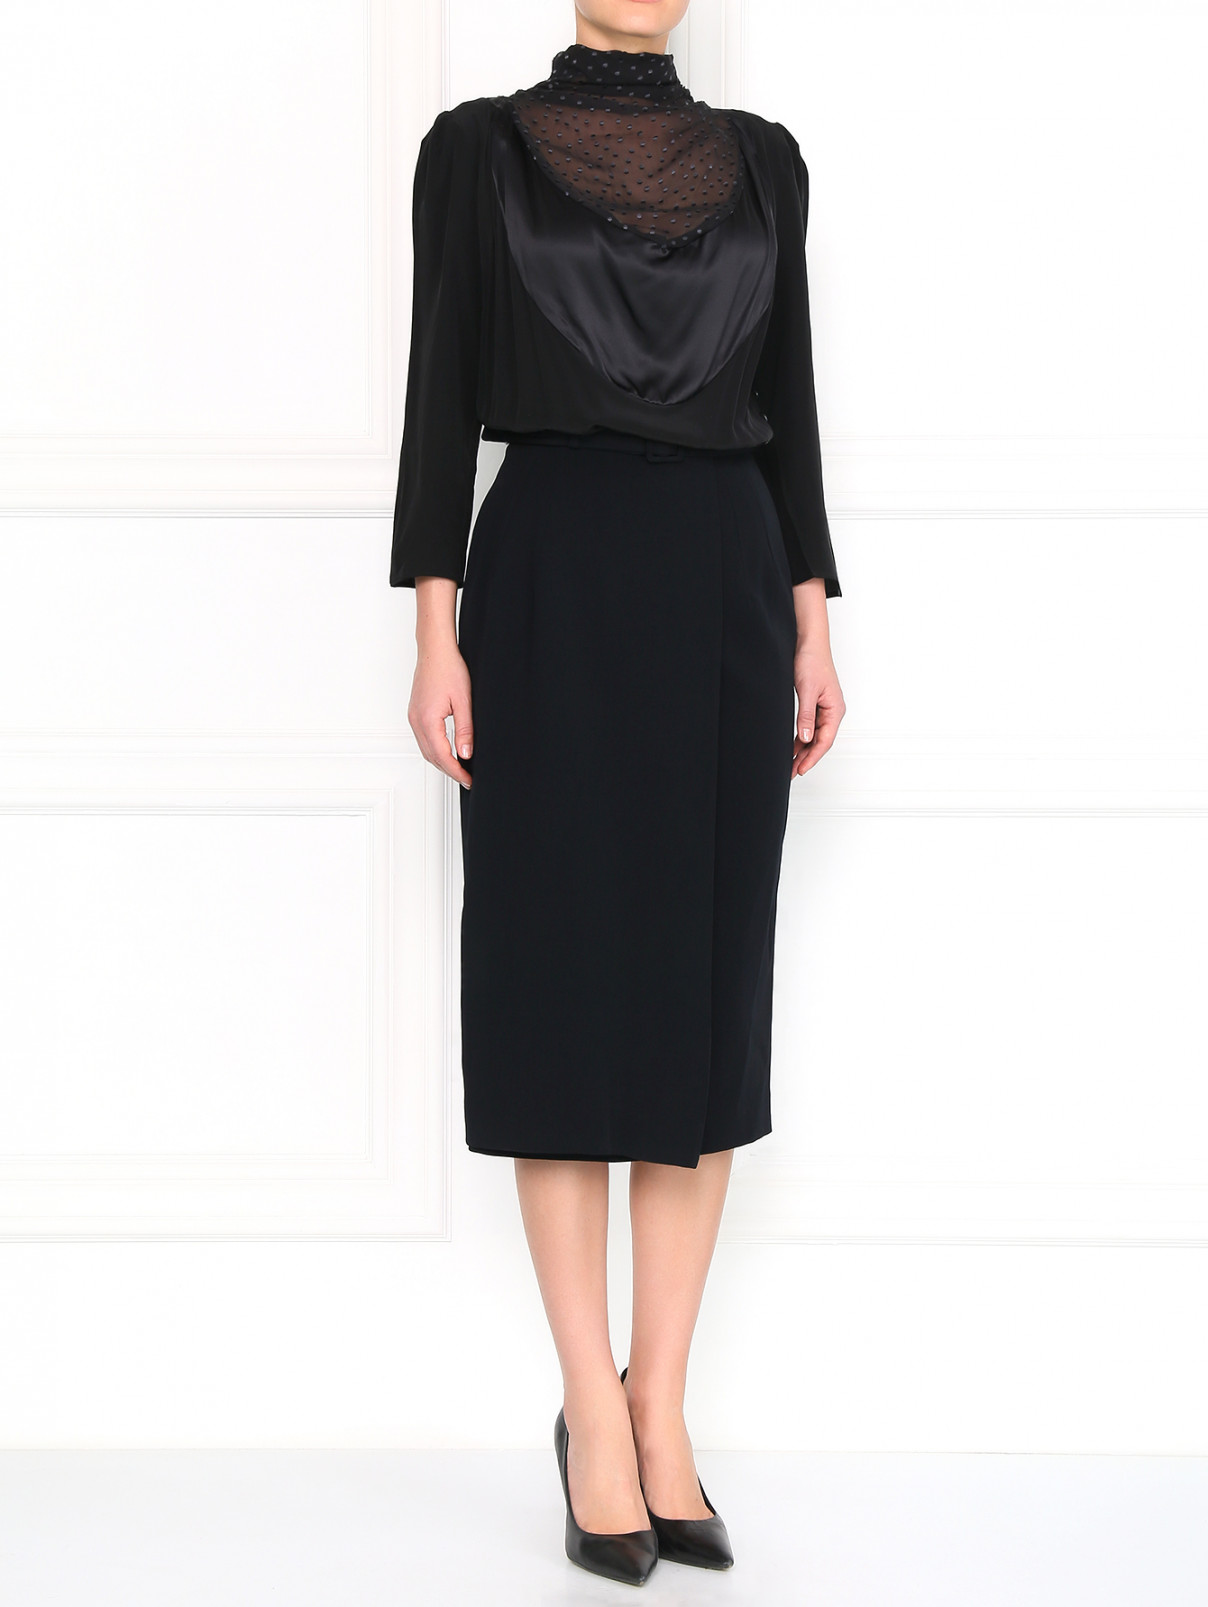 Платье-миди с прозрачной вставкой Antonio Marras  –  Модель Общий вид  – Цвет:  Черный